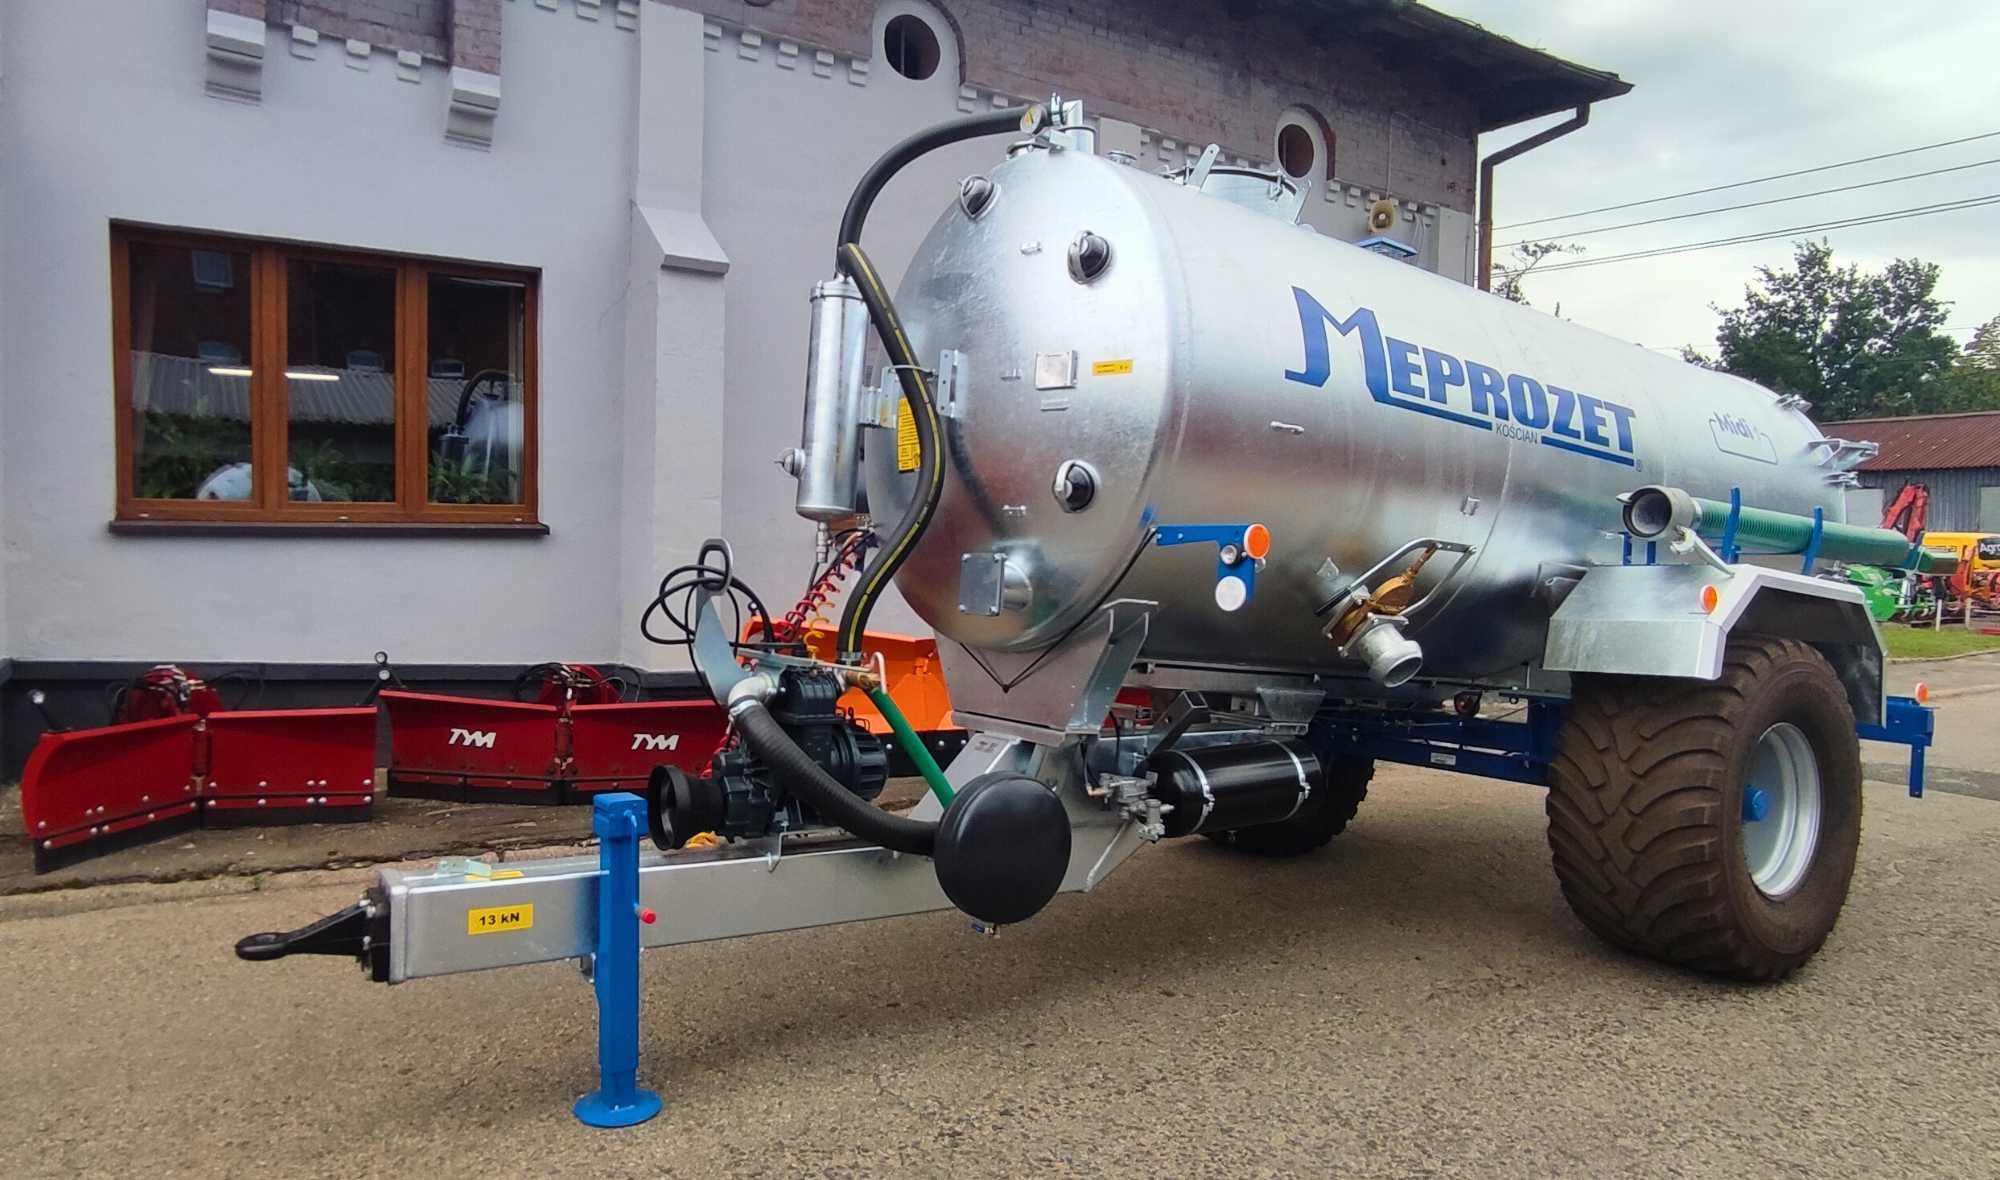 Beczka 8000 l wóz asenizacyjny MEPROZET szambo woda OD RĘKI Transport